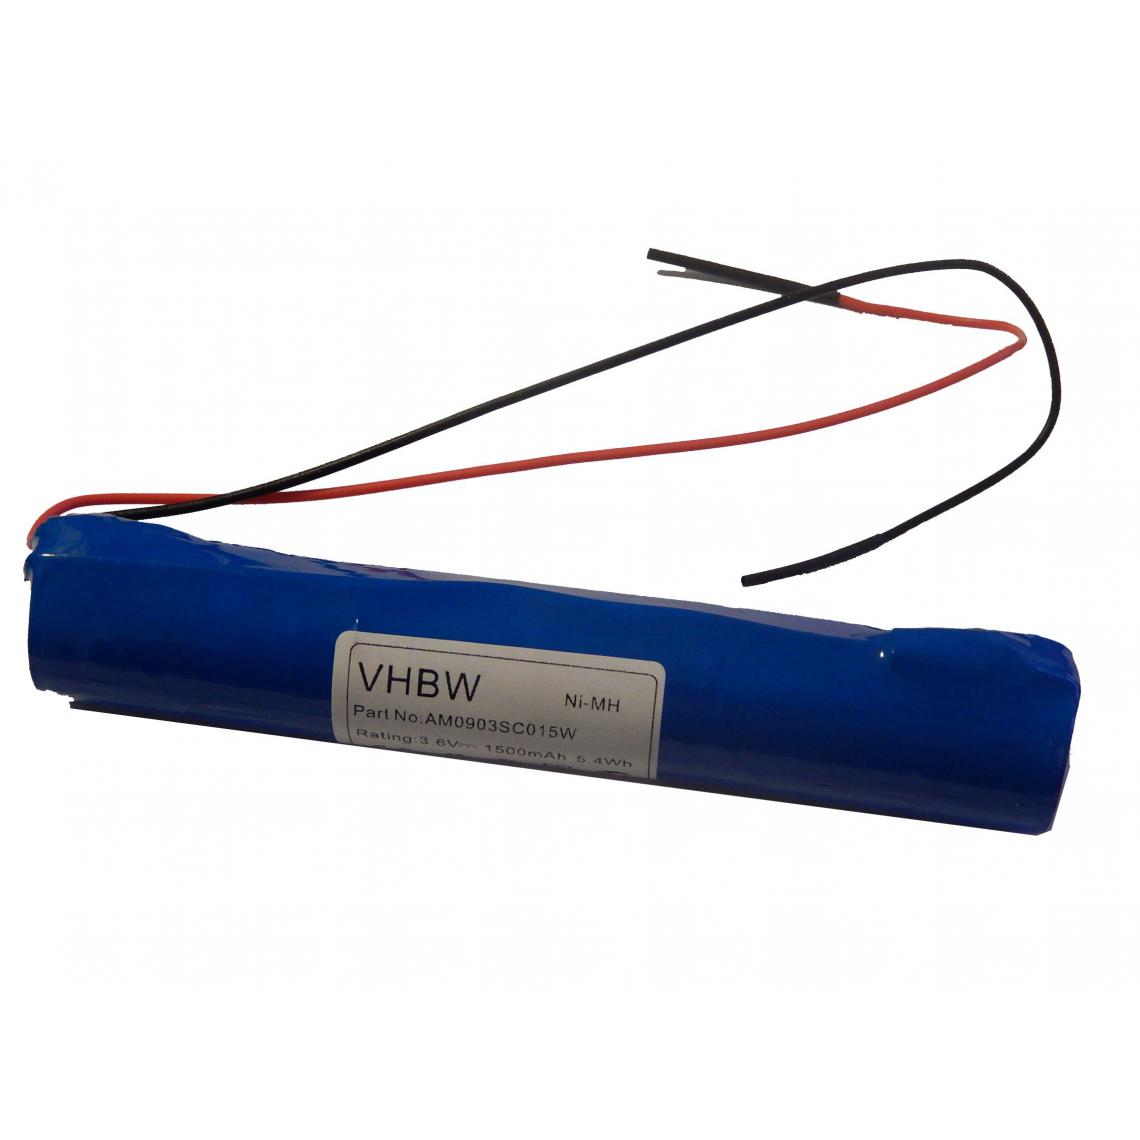 Vhbw - vhbw NiMH batterie céllule 1500mAh (3.6V) avec câble de raccord pour issues de secours, éclairage de secours, batterie bâton - Autre appareil de mesure